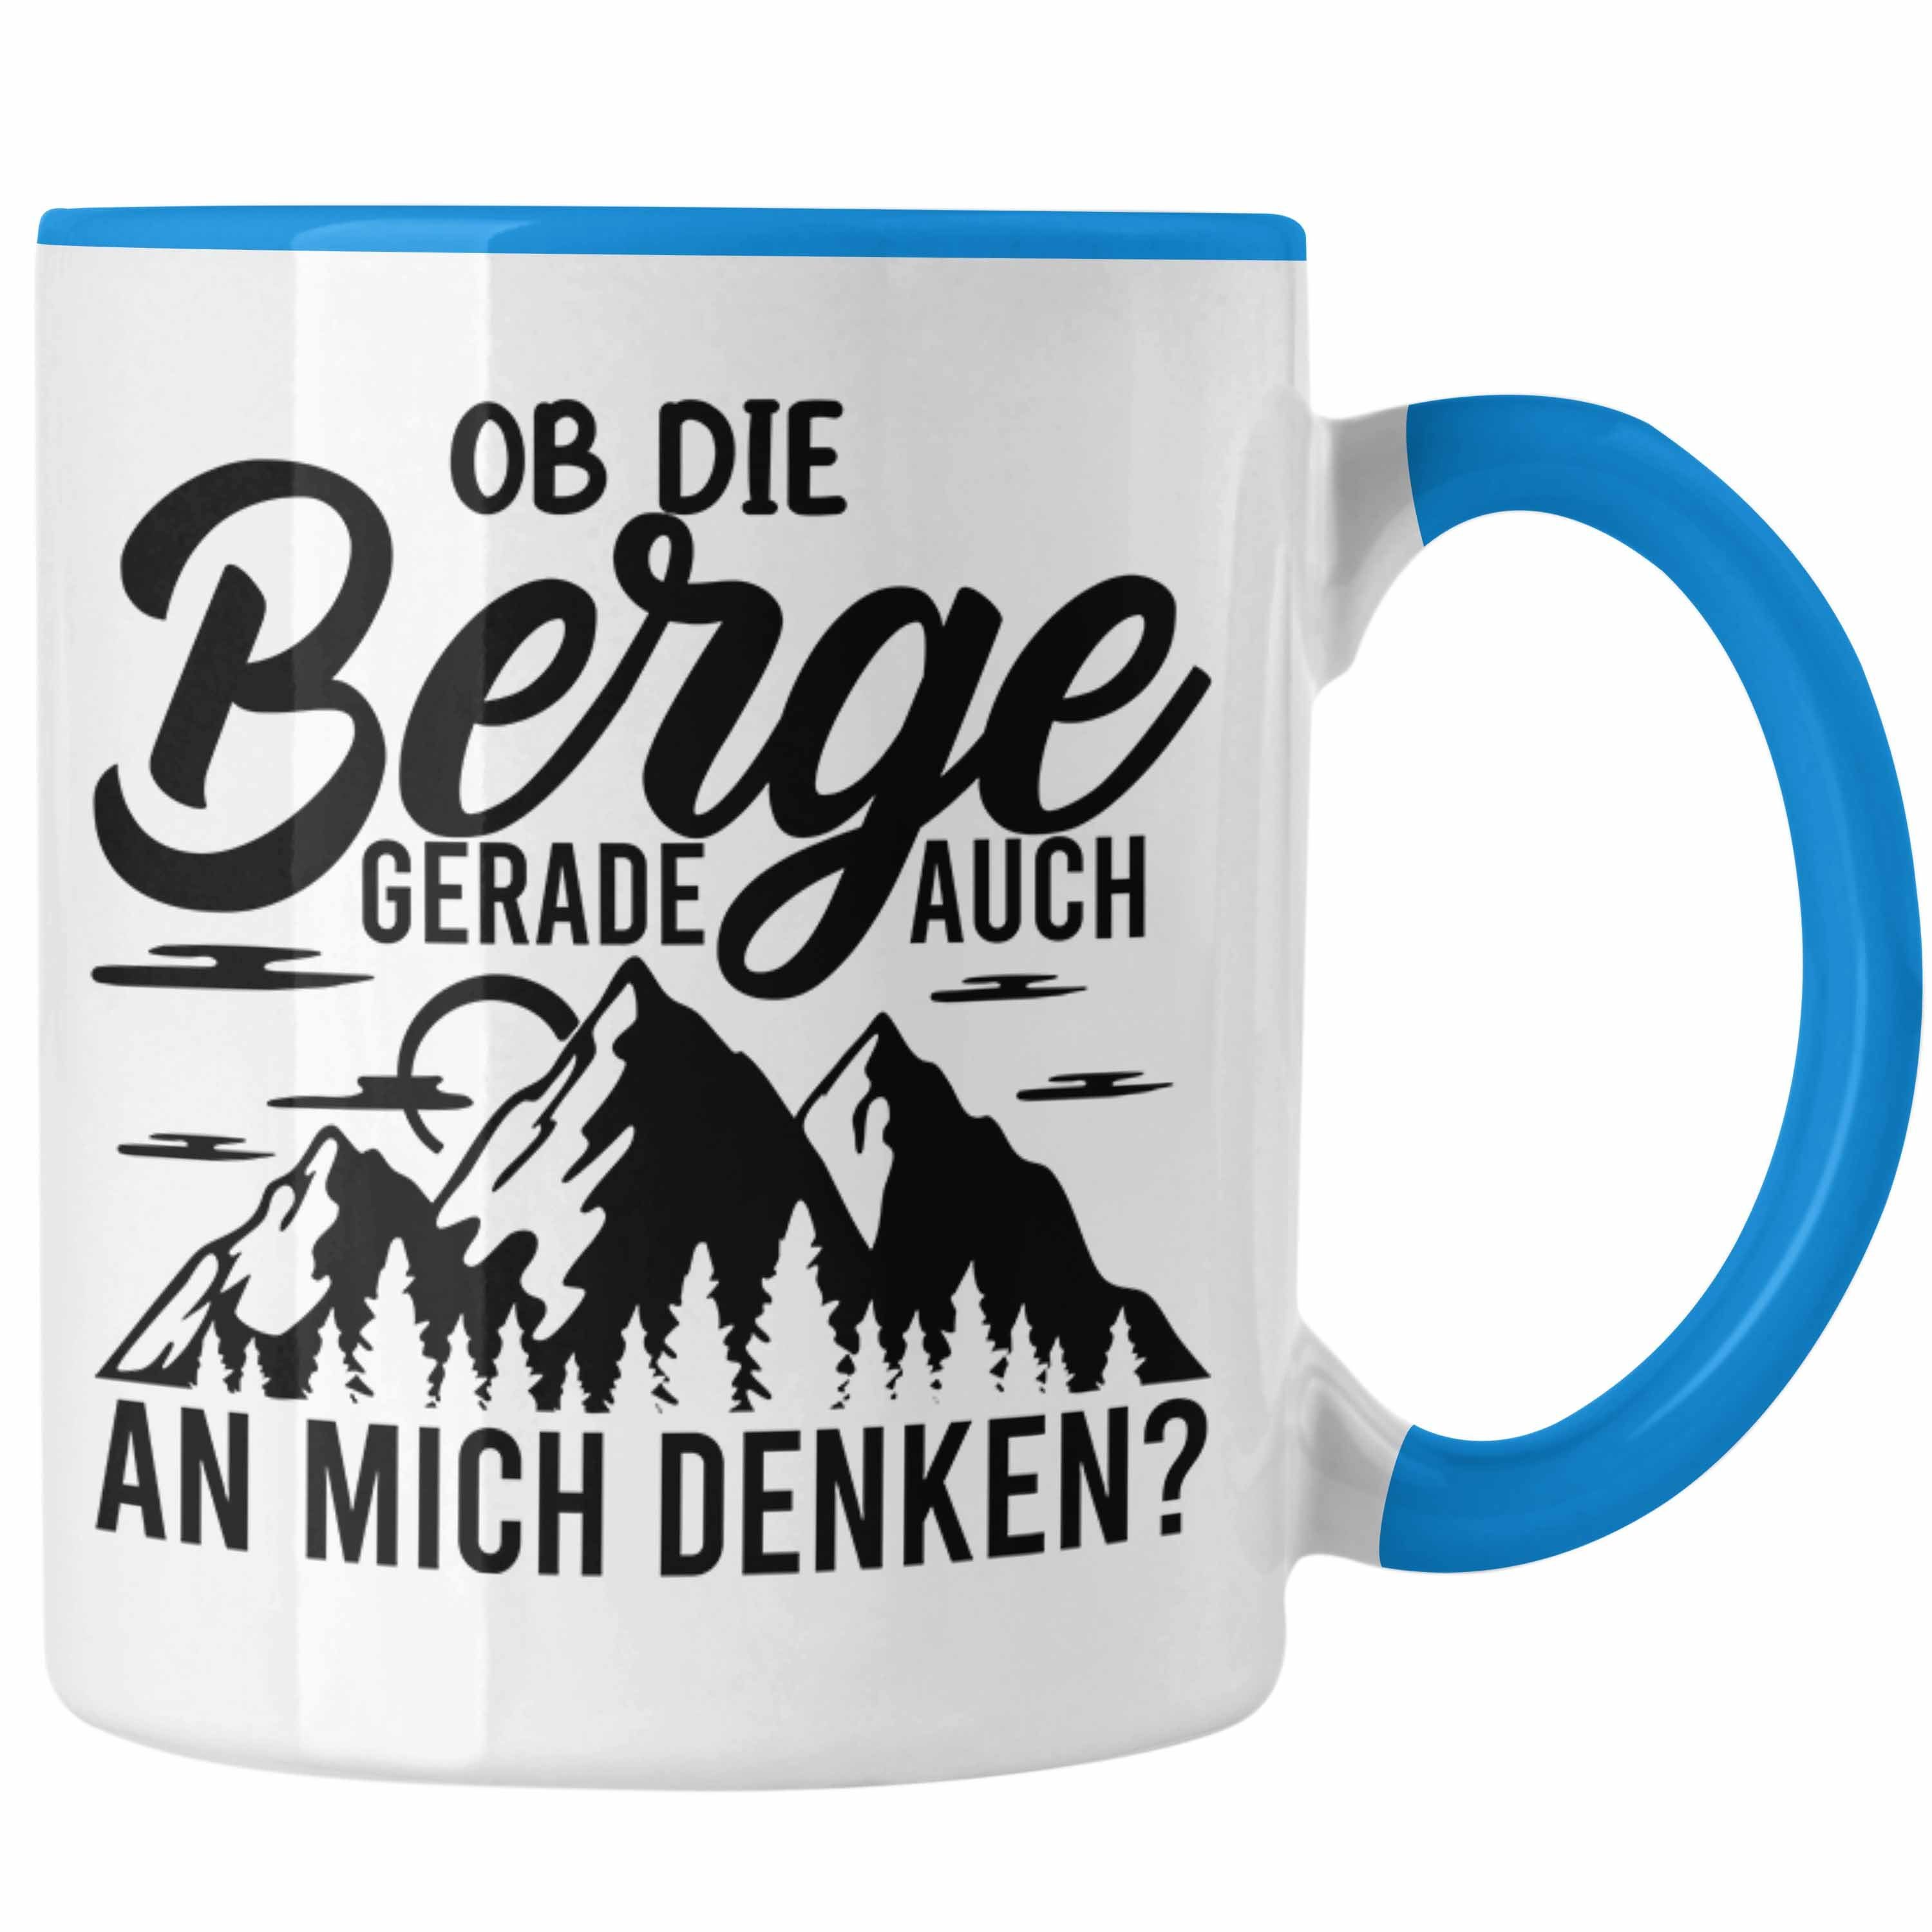 Die Geschenkidee Berge Blau Trendation Alpen Mich Trendation Wandern Auch An Geschenke - Tasse Berge Denken Tasse Geschenk Wanderer Ob